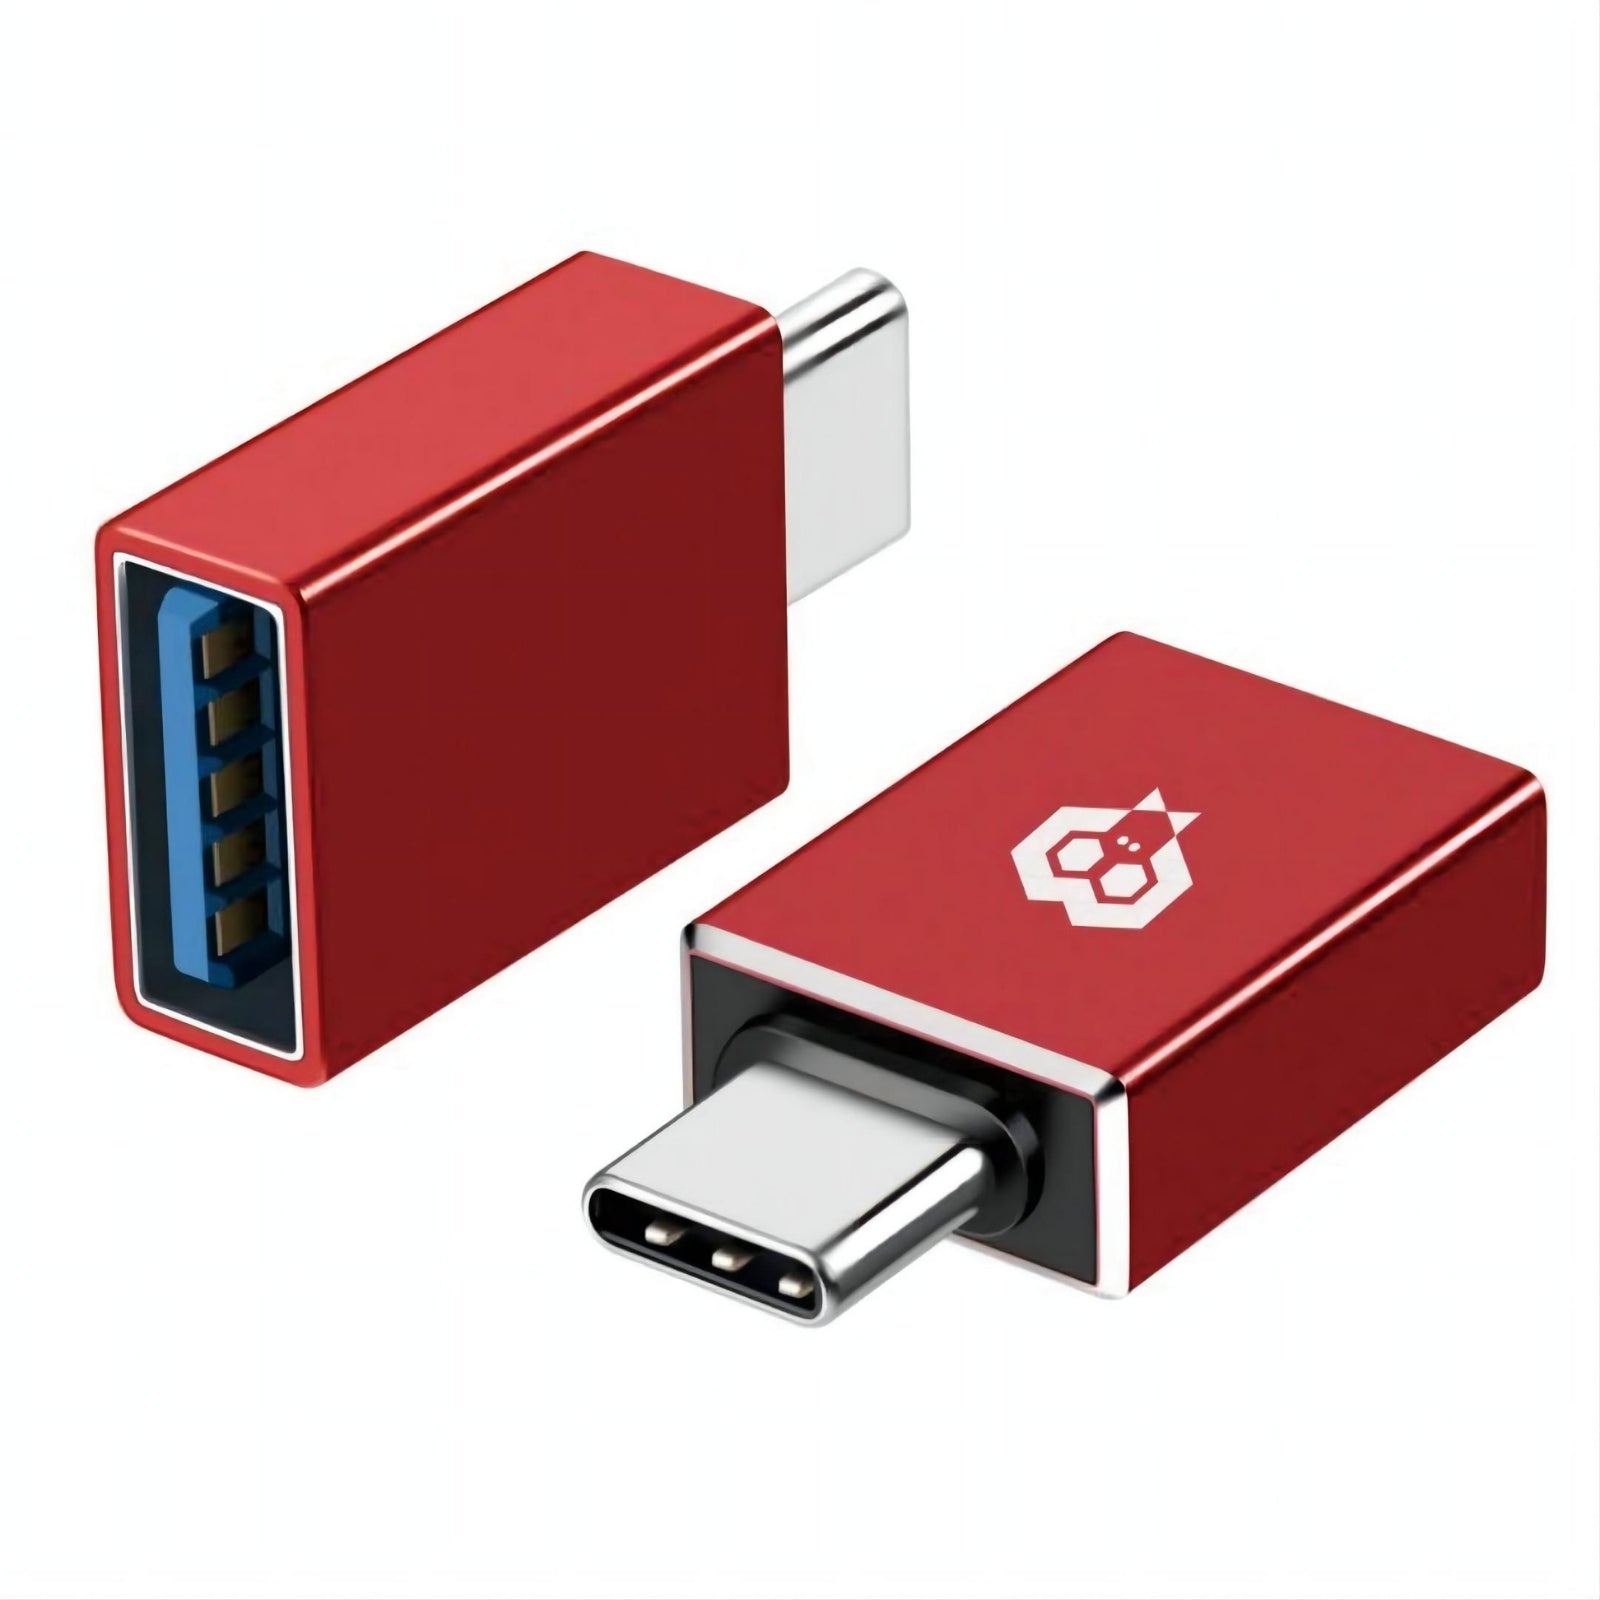 Adaptateur MonkeyTEC USB Type C vers USB 3.0 pour Macbook, iPhone, iPad, Android, ordinateur portable et autres appareils de type C